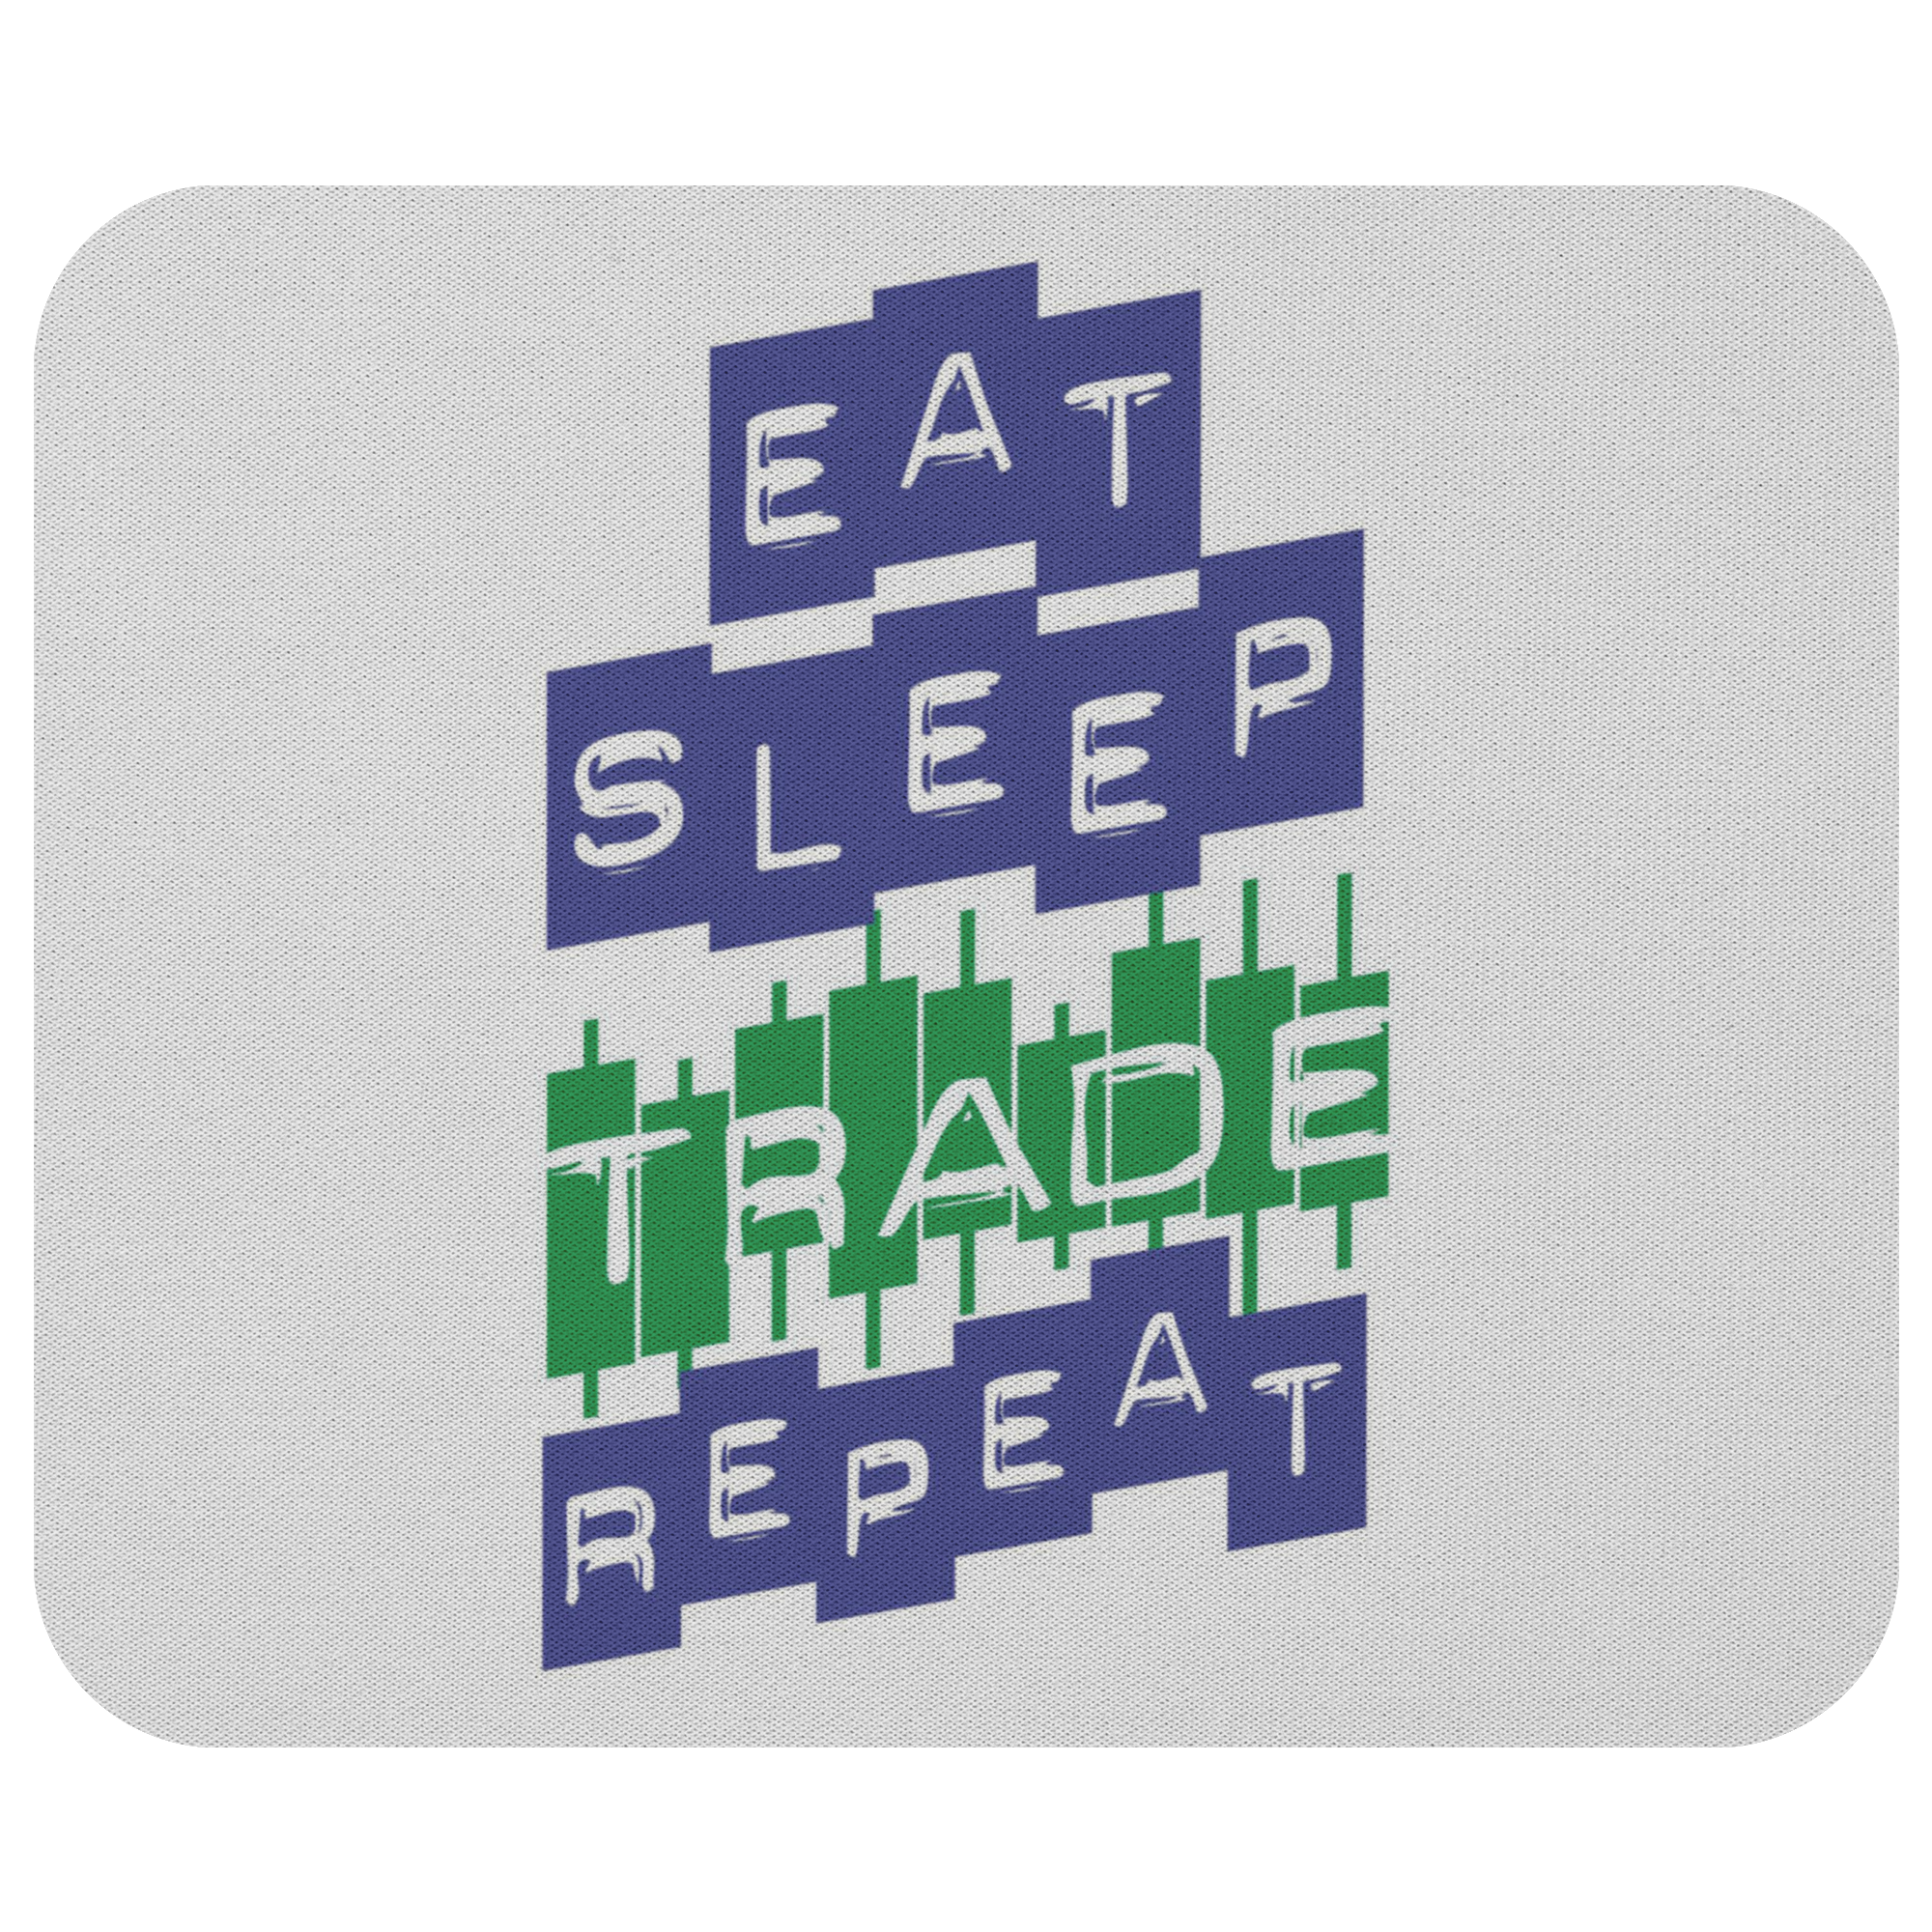 Mousepad - Eat Sleep Trade Repeat